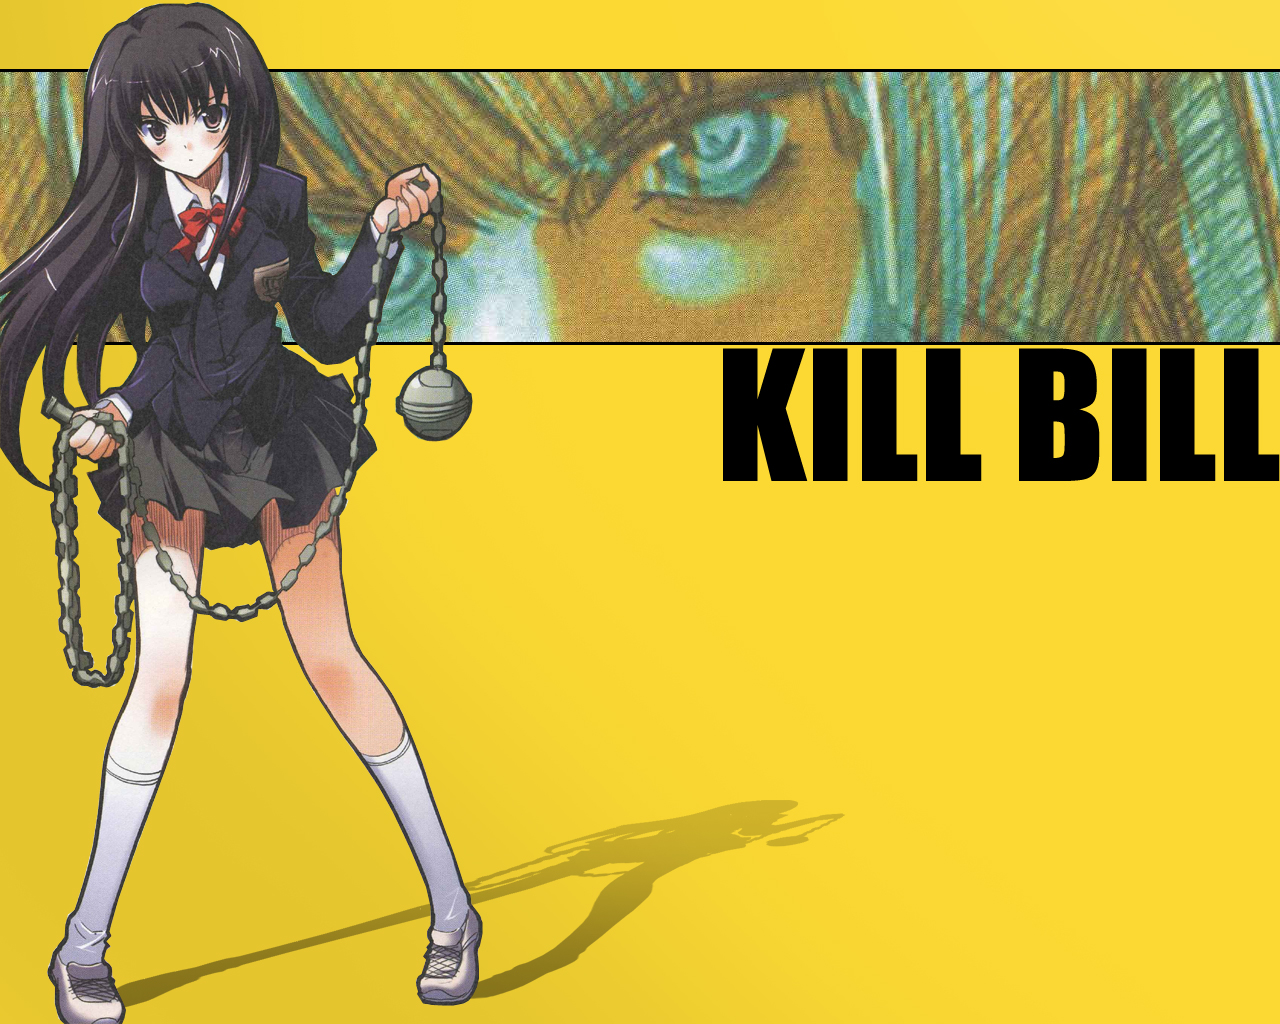 tuer bill fond d'écran,dessin animé,jaune,personnage fictif,anime,cheveux noirs